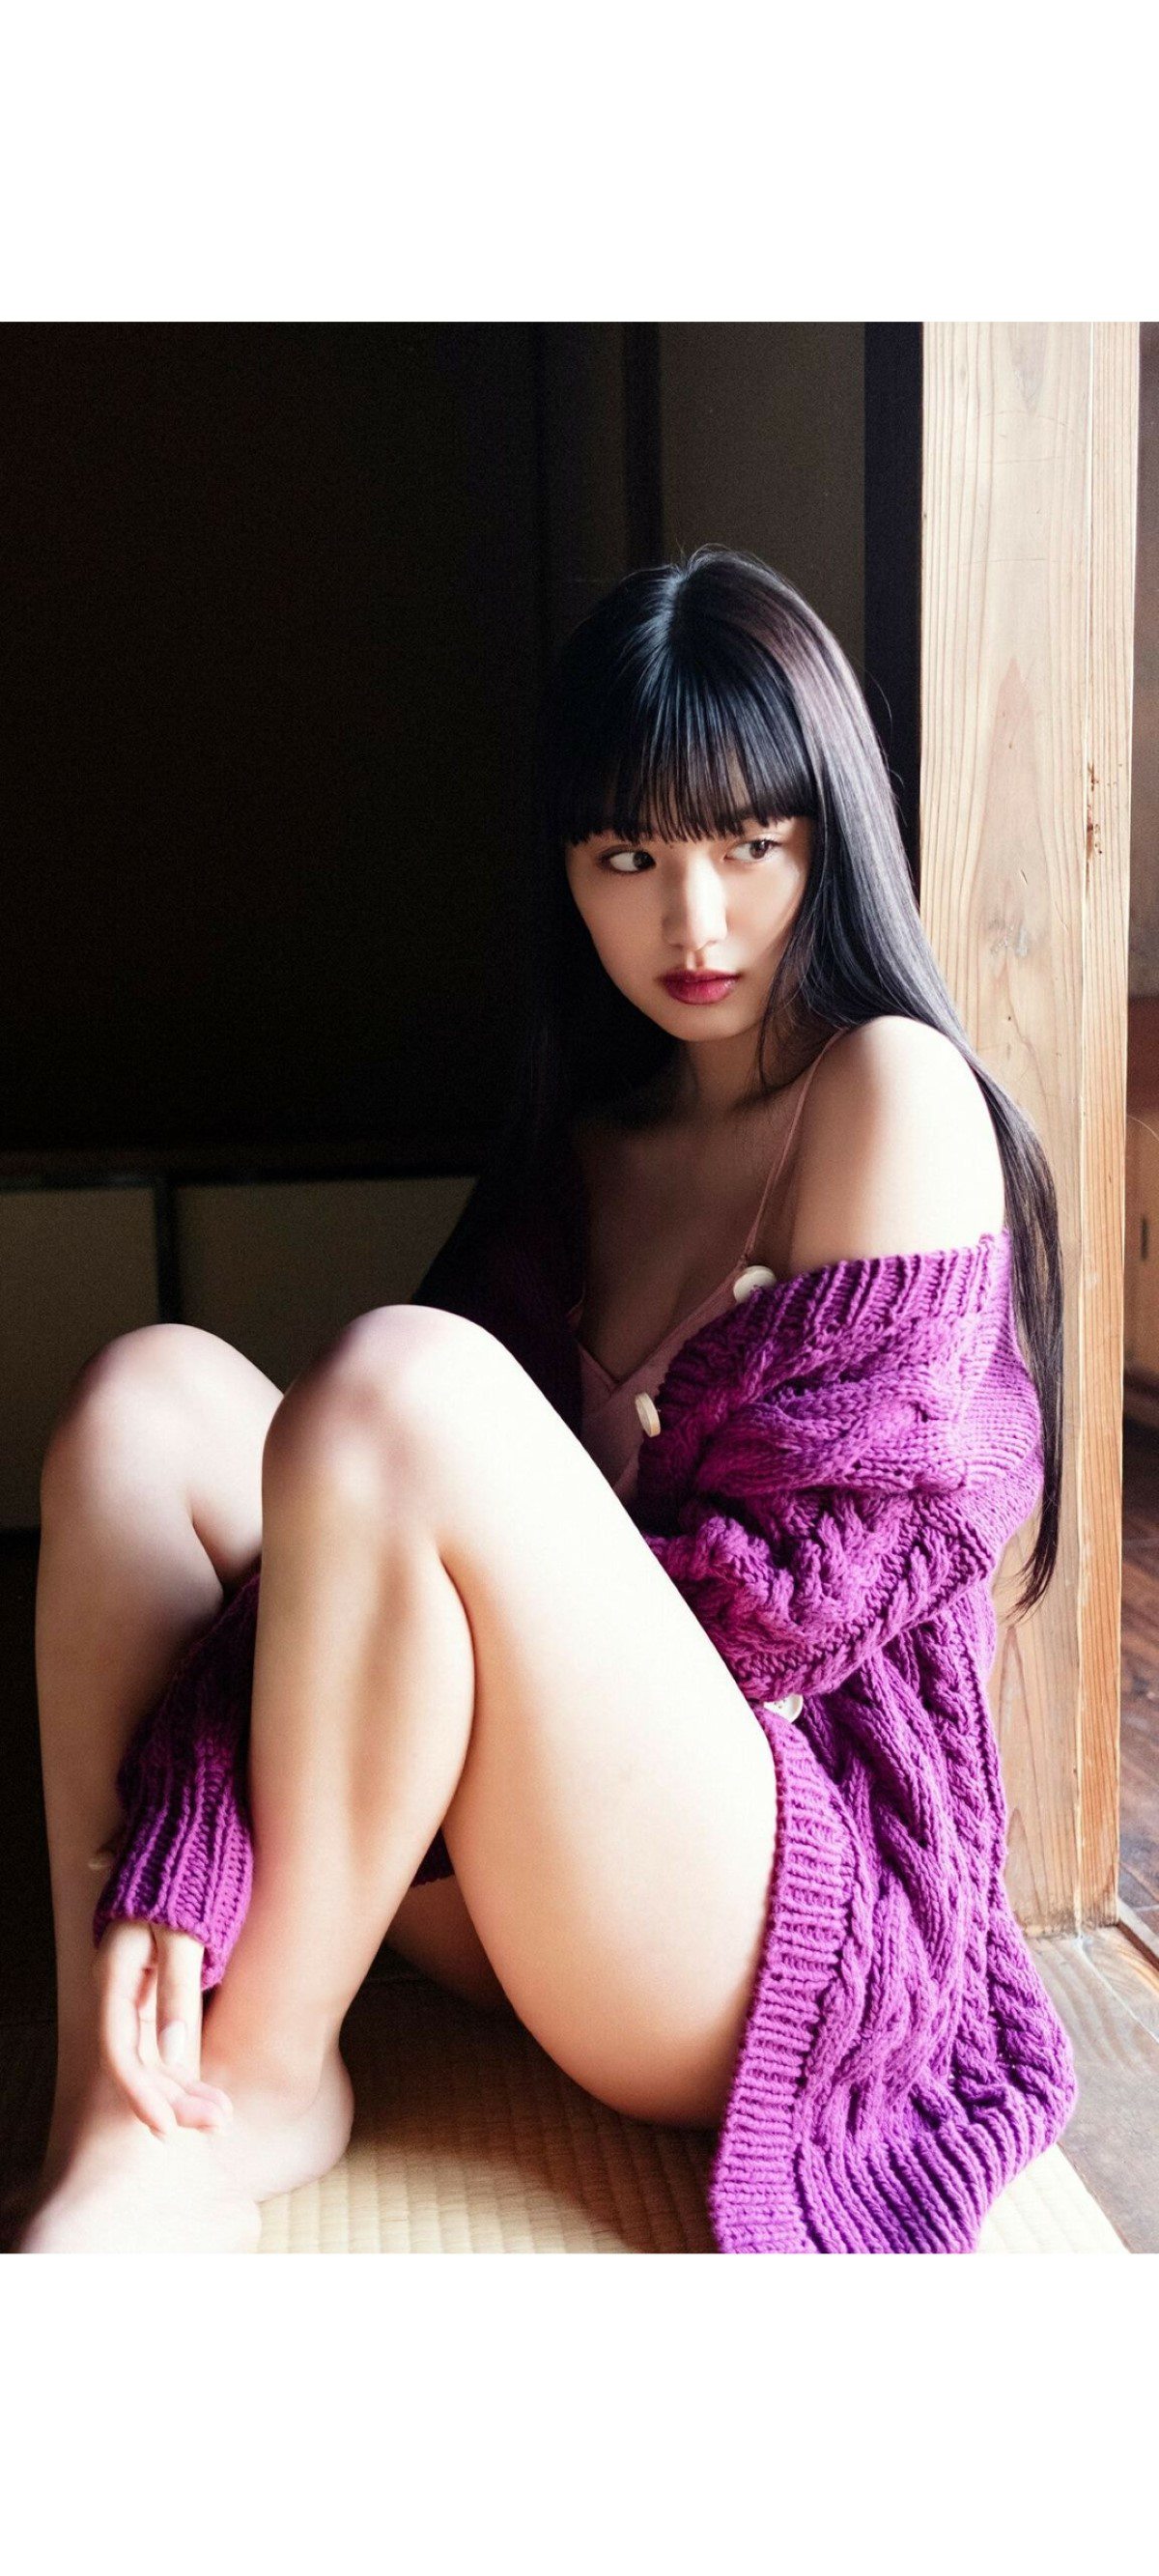 Weekly Photobook 2020 12 07 Noa Tsurushima 鶴嶋乃愛 A natural actress 生まれながらにして女優 0032 6302412666.jpg